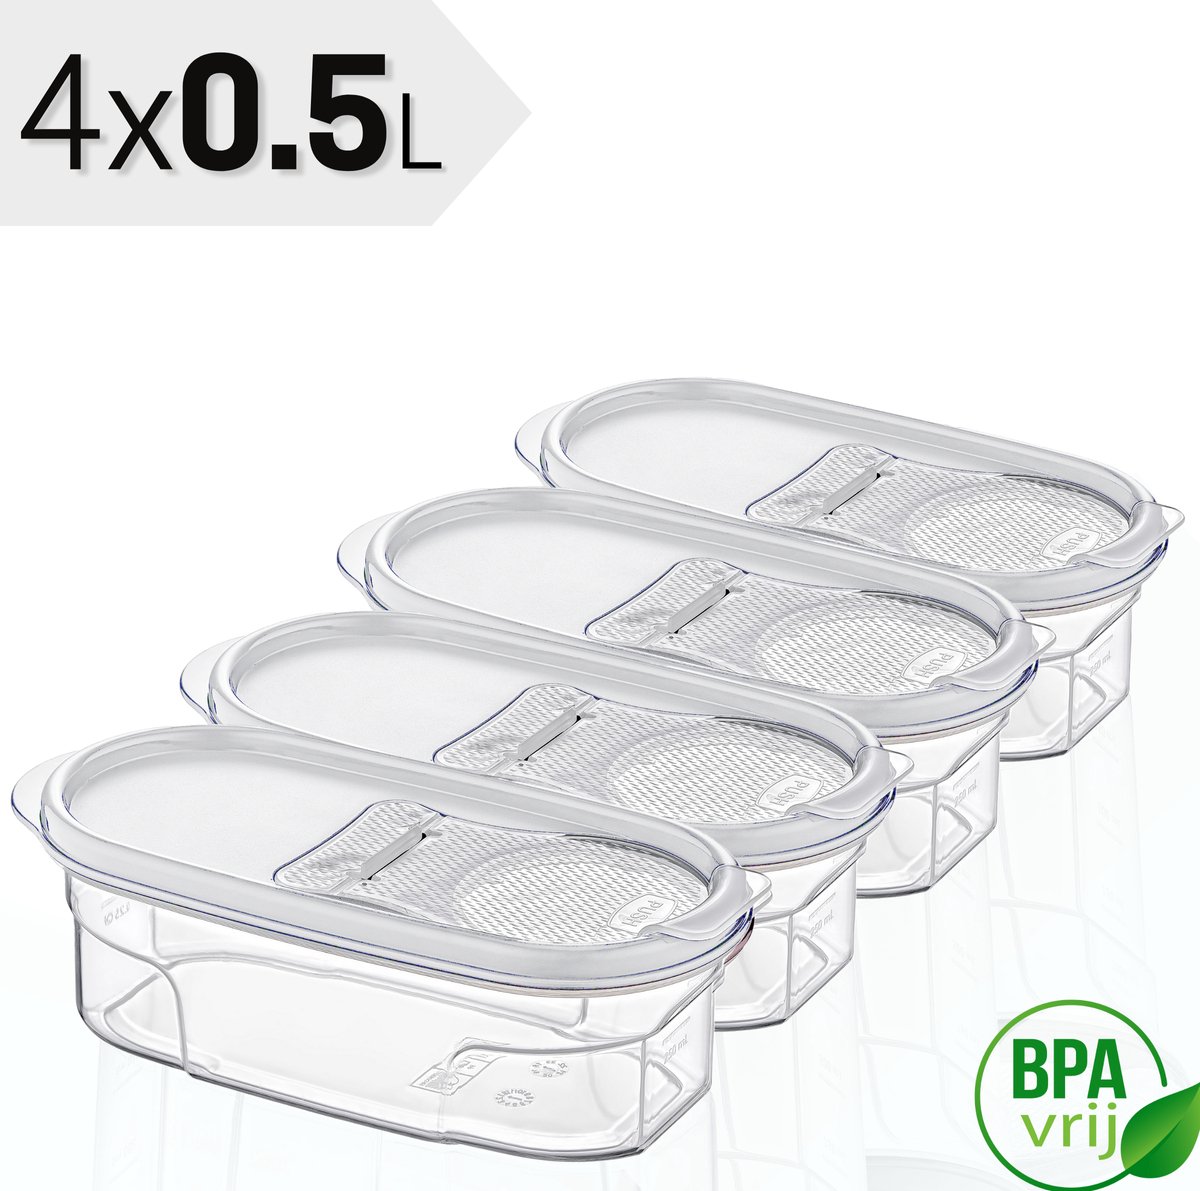 Voorraadpotten Set van 4 - 4x0.5L met witte deksel Voorraadbussen - Vershouddoos - 4 Stuks - BPA vrij - Kunststof